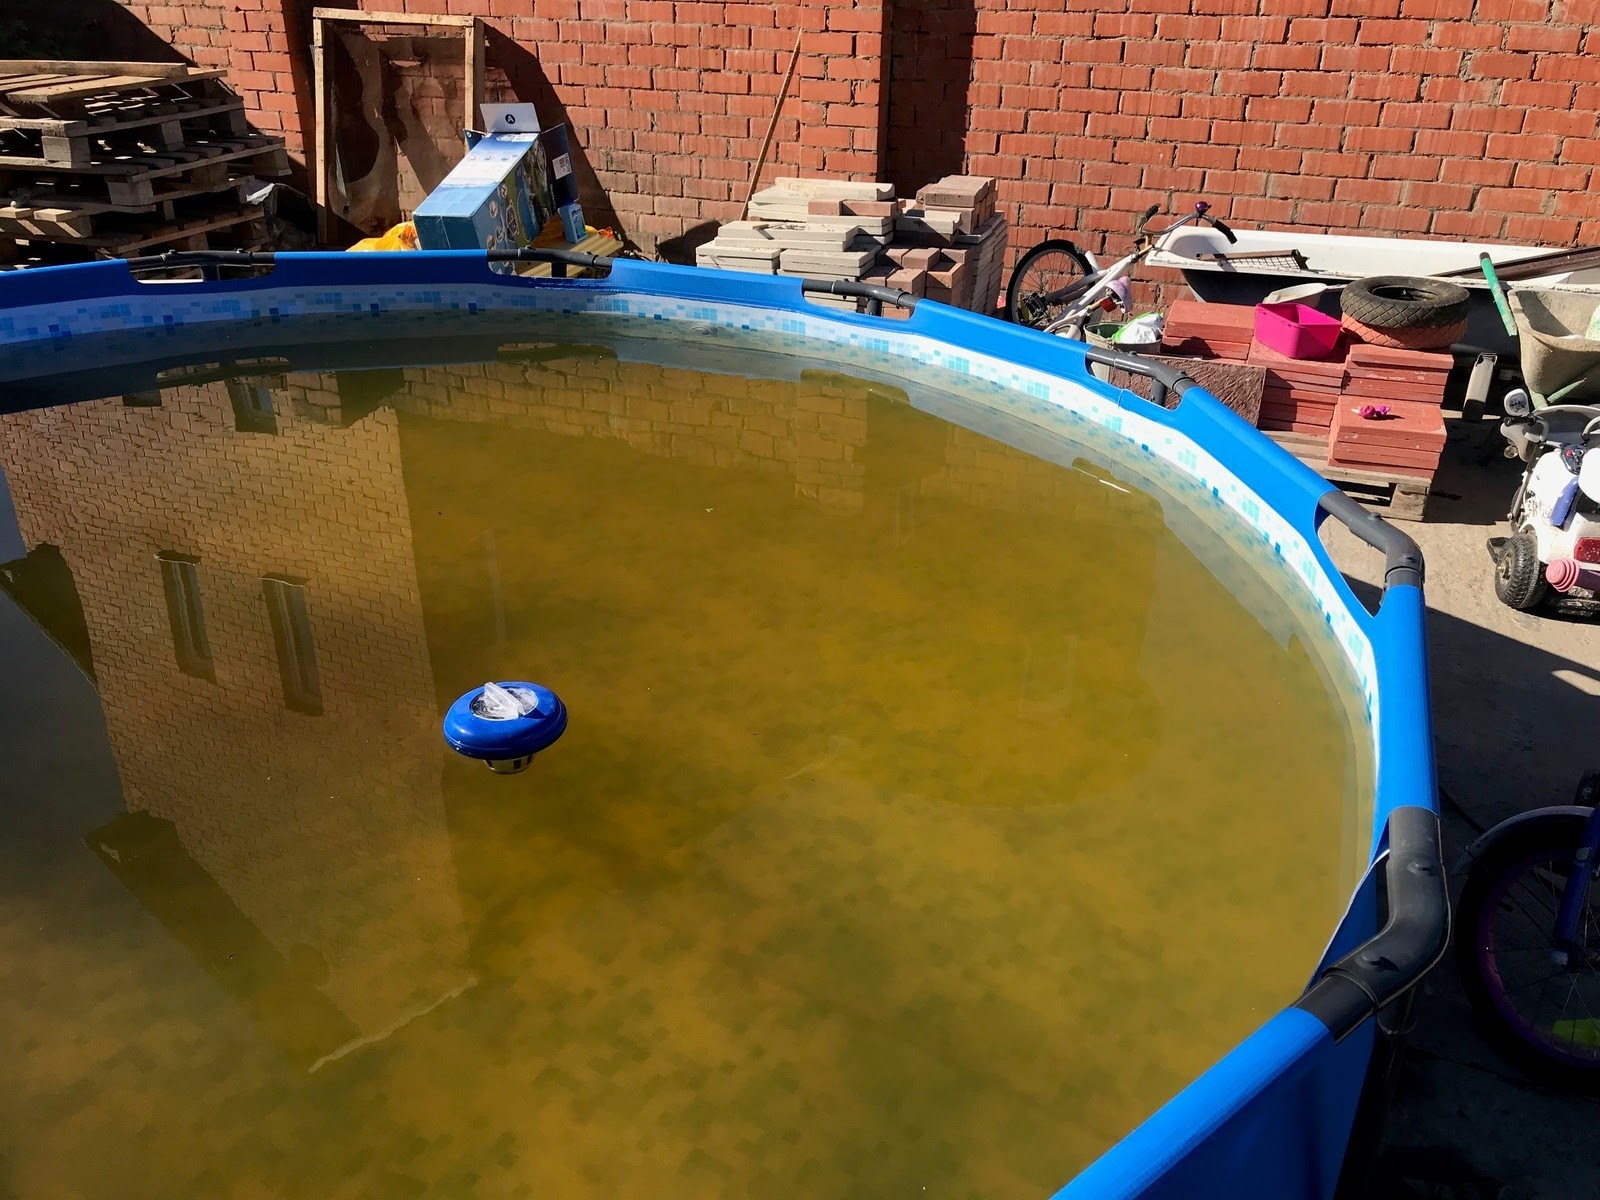 Как очистить воду в бассейне народными средствами дешево